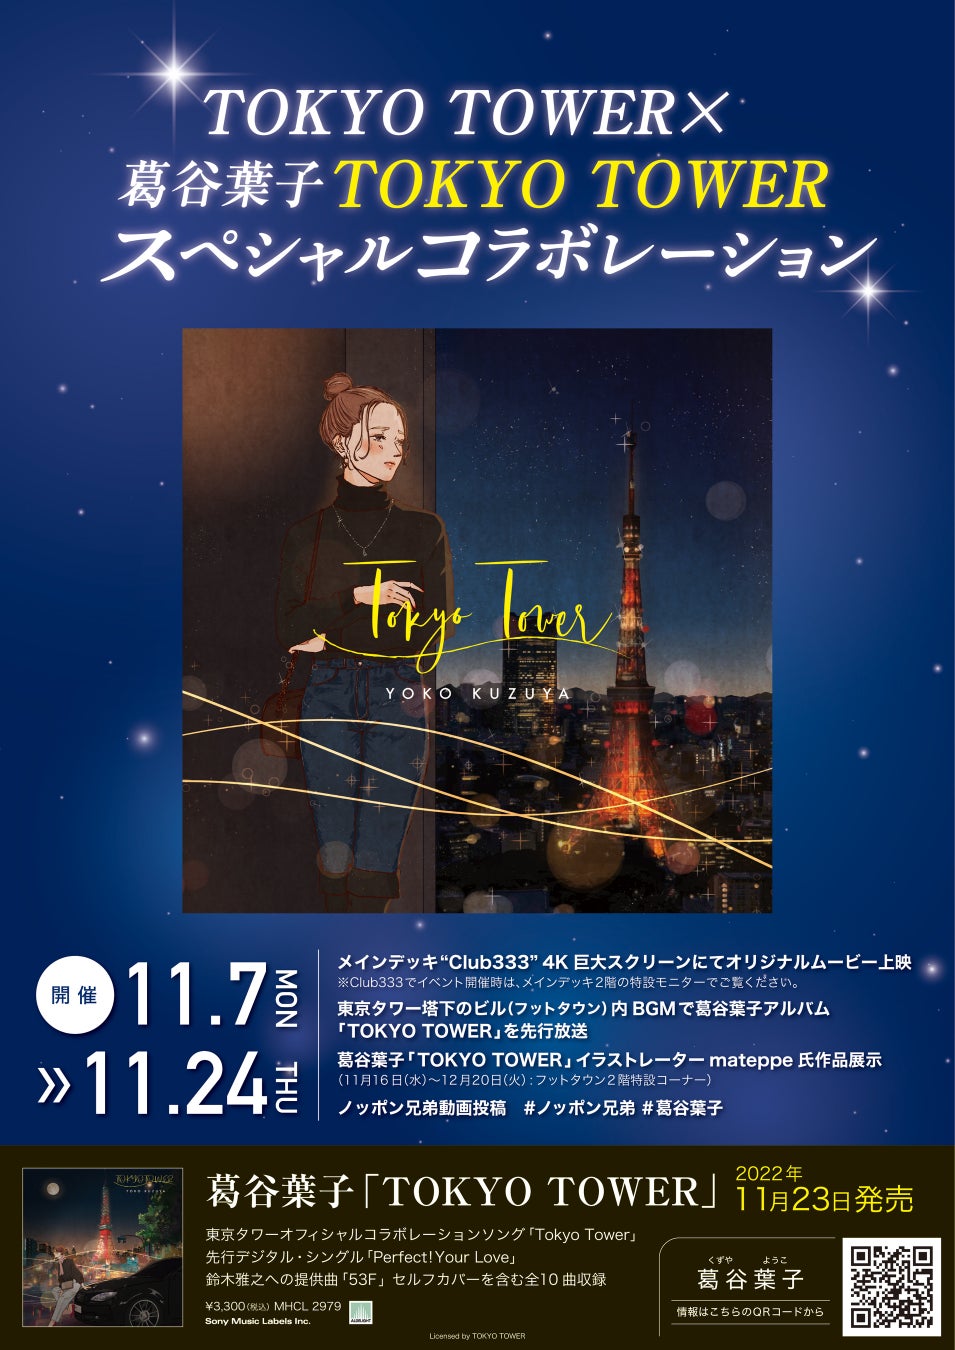 東京タワー×葛谷葉子「TOKYO TOWER」スペシャルコラボレーション企画決定!!